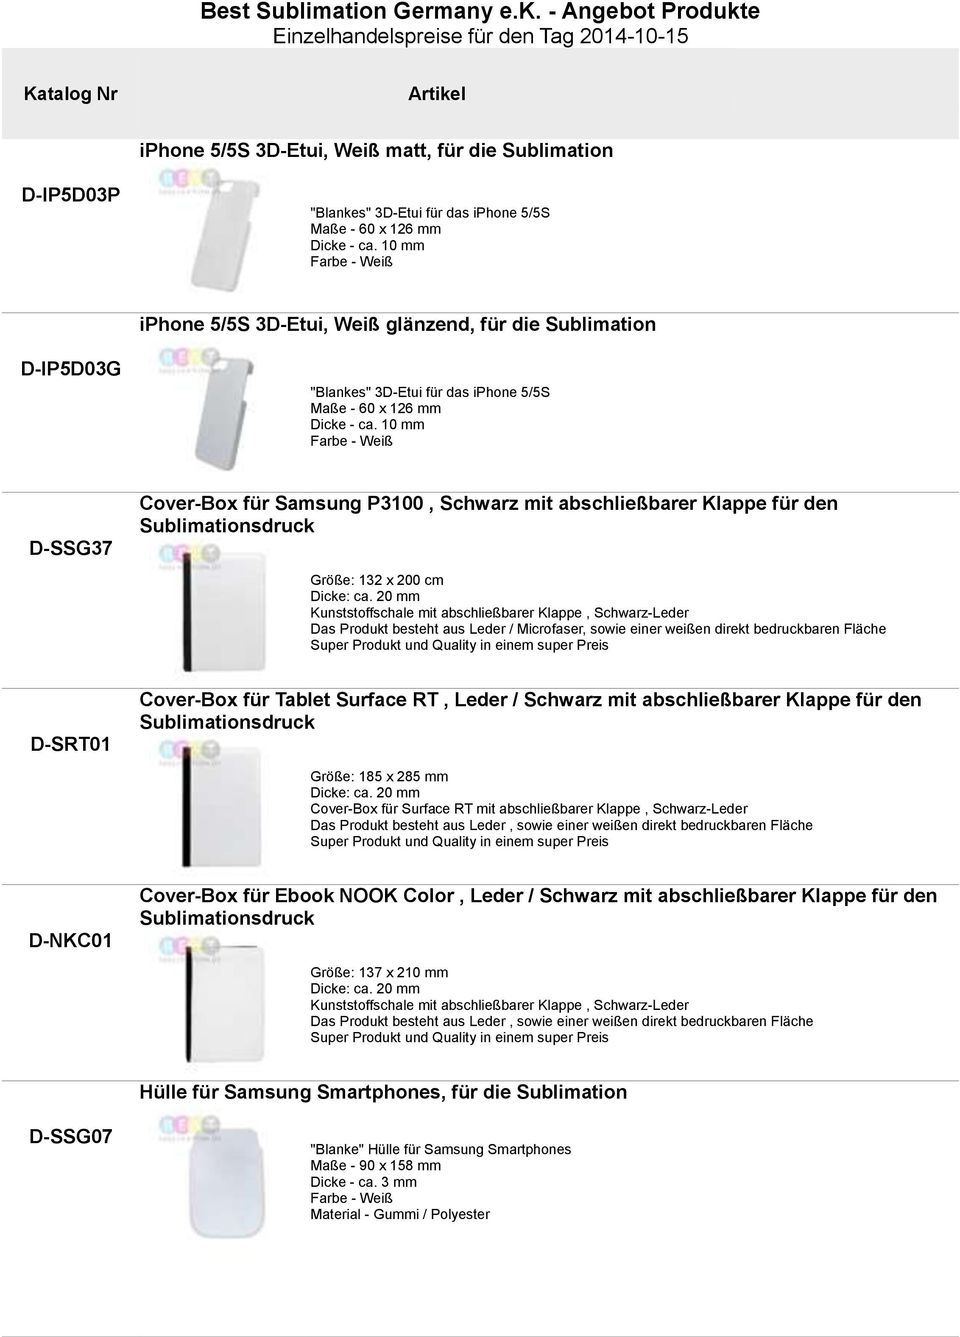 10 mm Farbe - Weiß SSG37 Cover-Box für Samsung P3100, Schwarz mit abschließbarer Klappe für den Sublimationsdruck Größe: 132 x 200 cm Dicke: ca.